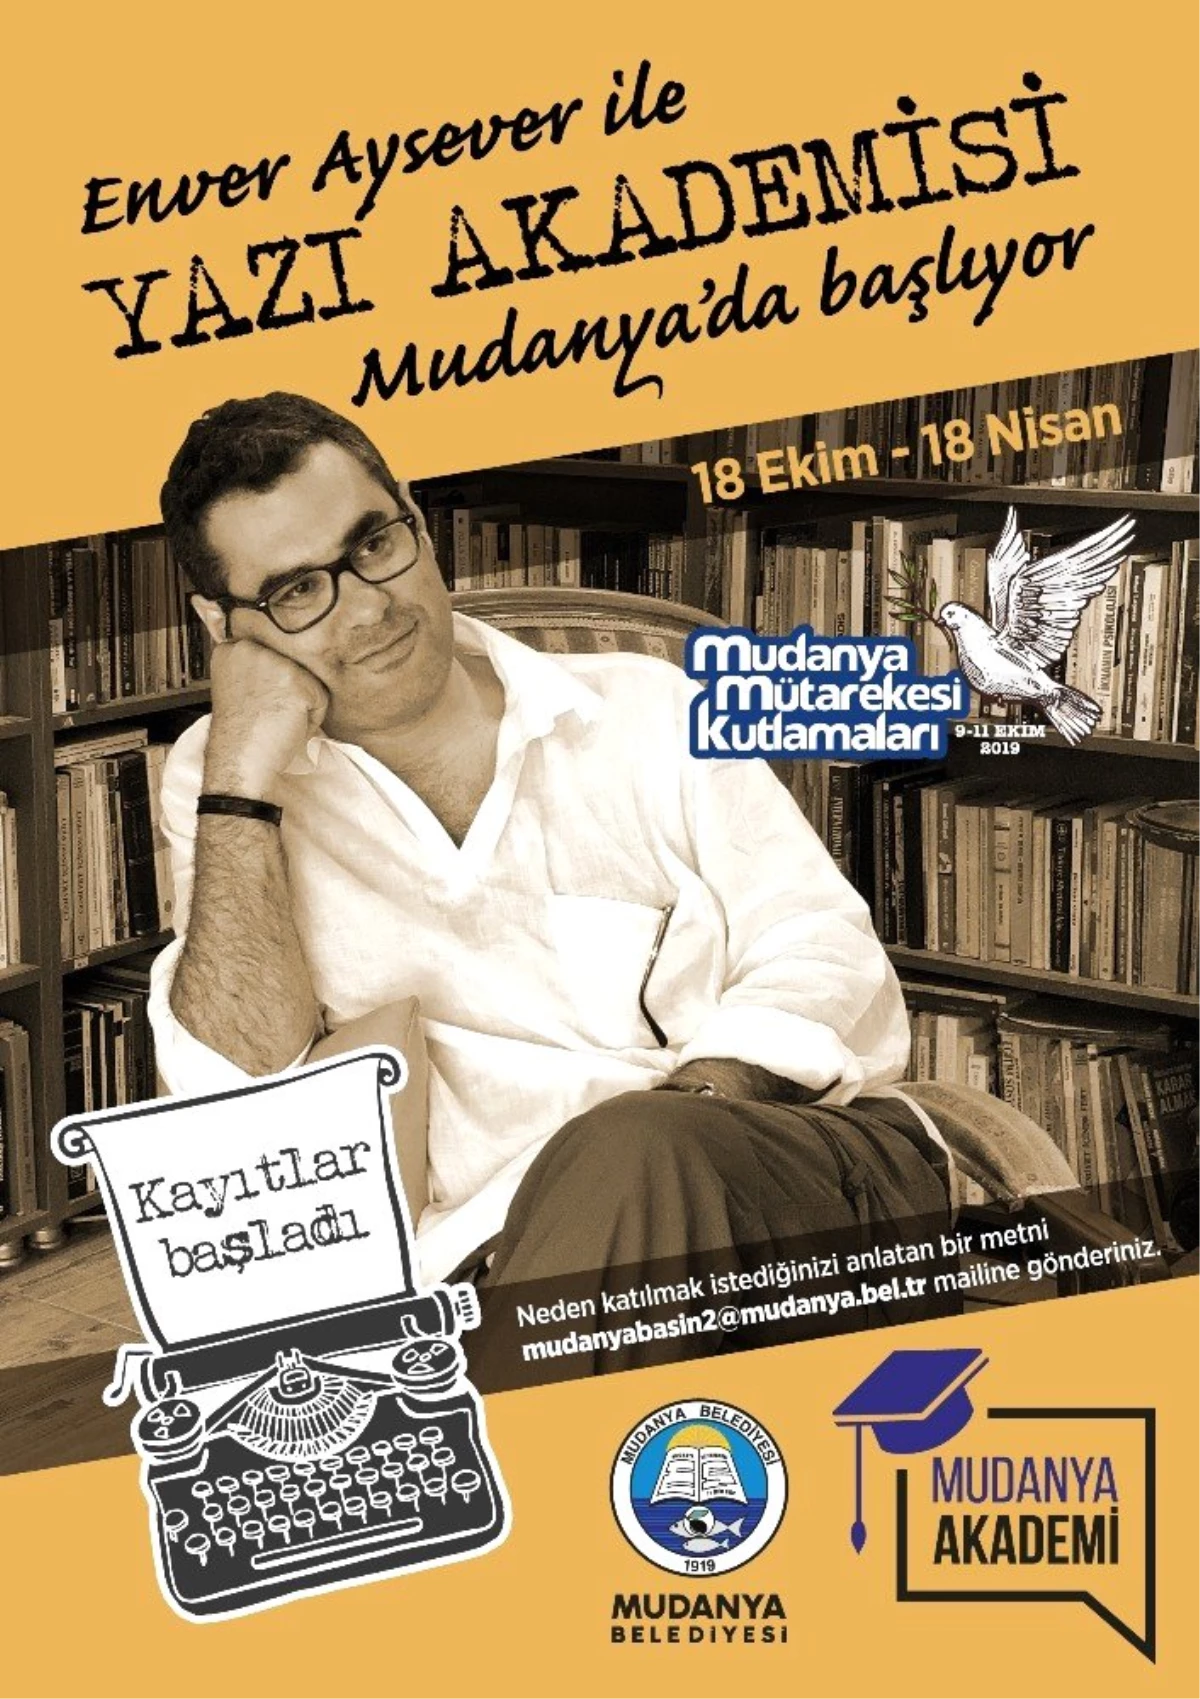 Enver Aysever ile "Yazı Akademisi" Mudanya\'da başlıyor